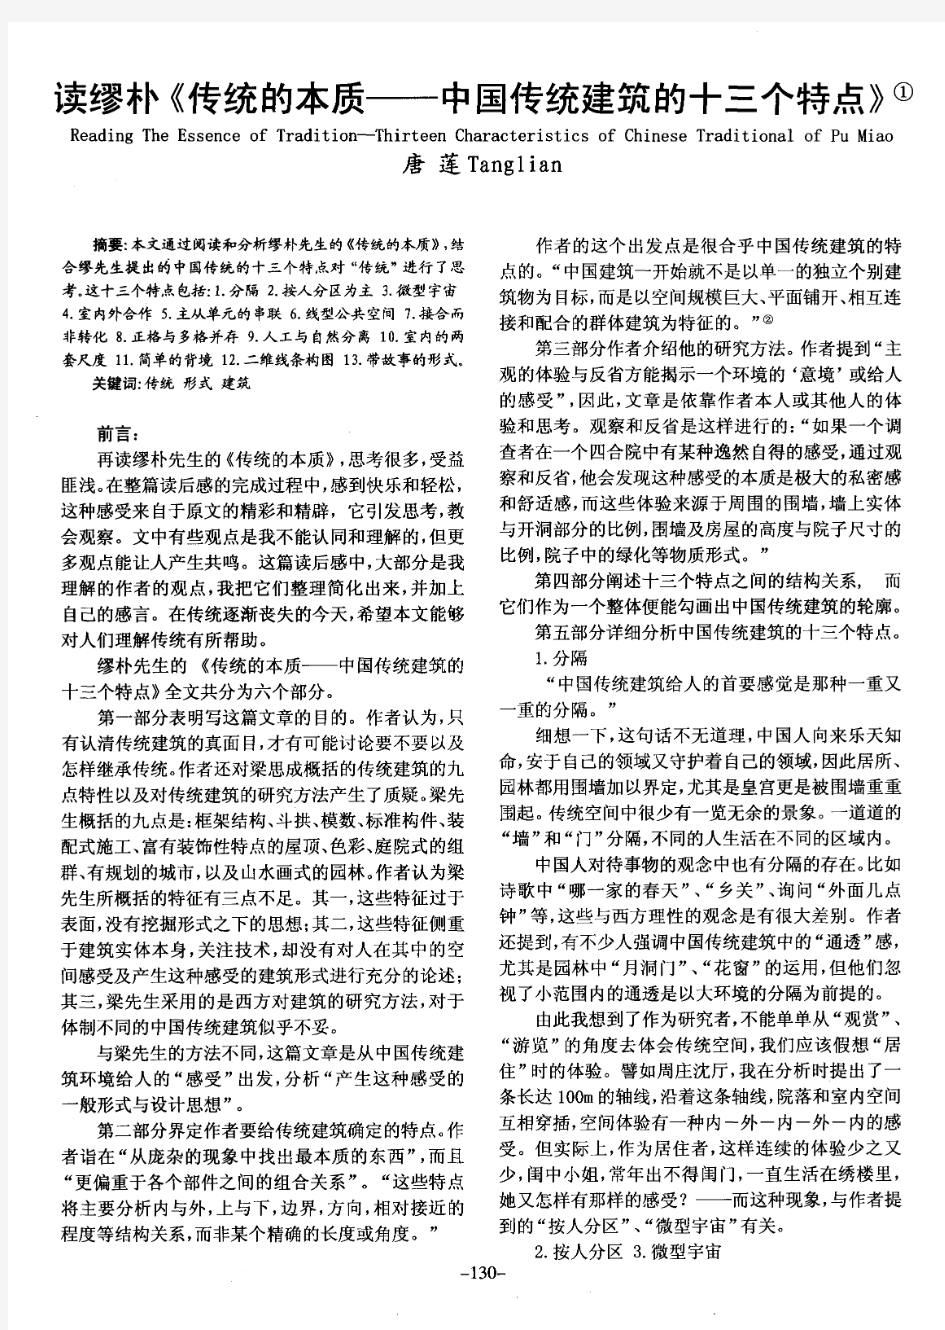 读缪朴《传统的本质——中国传统建筑的十三个特点》